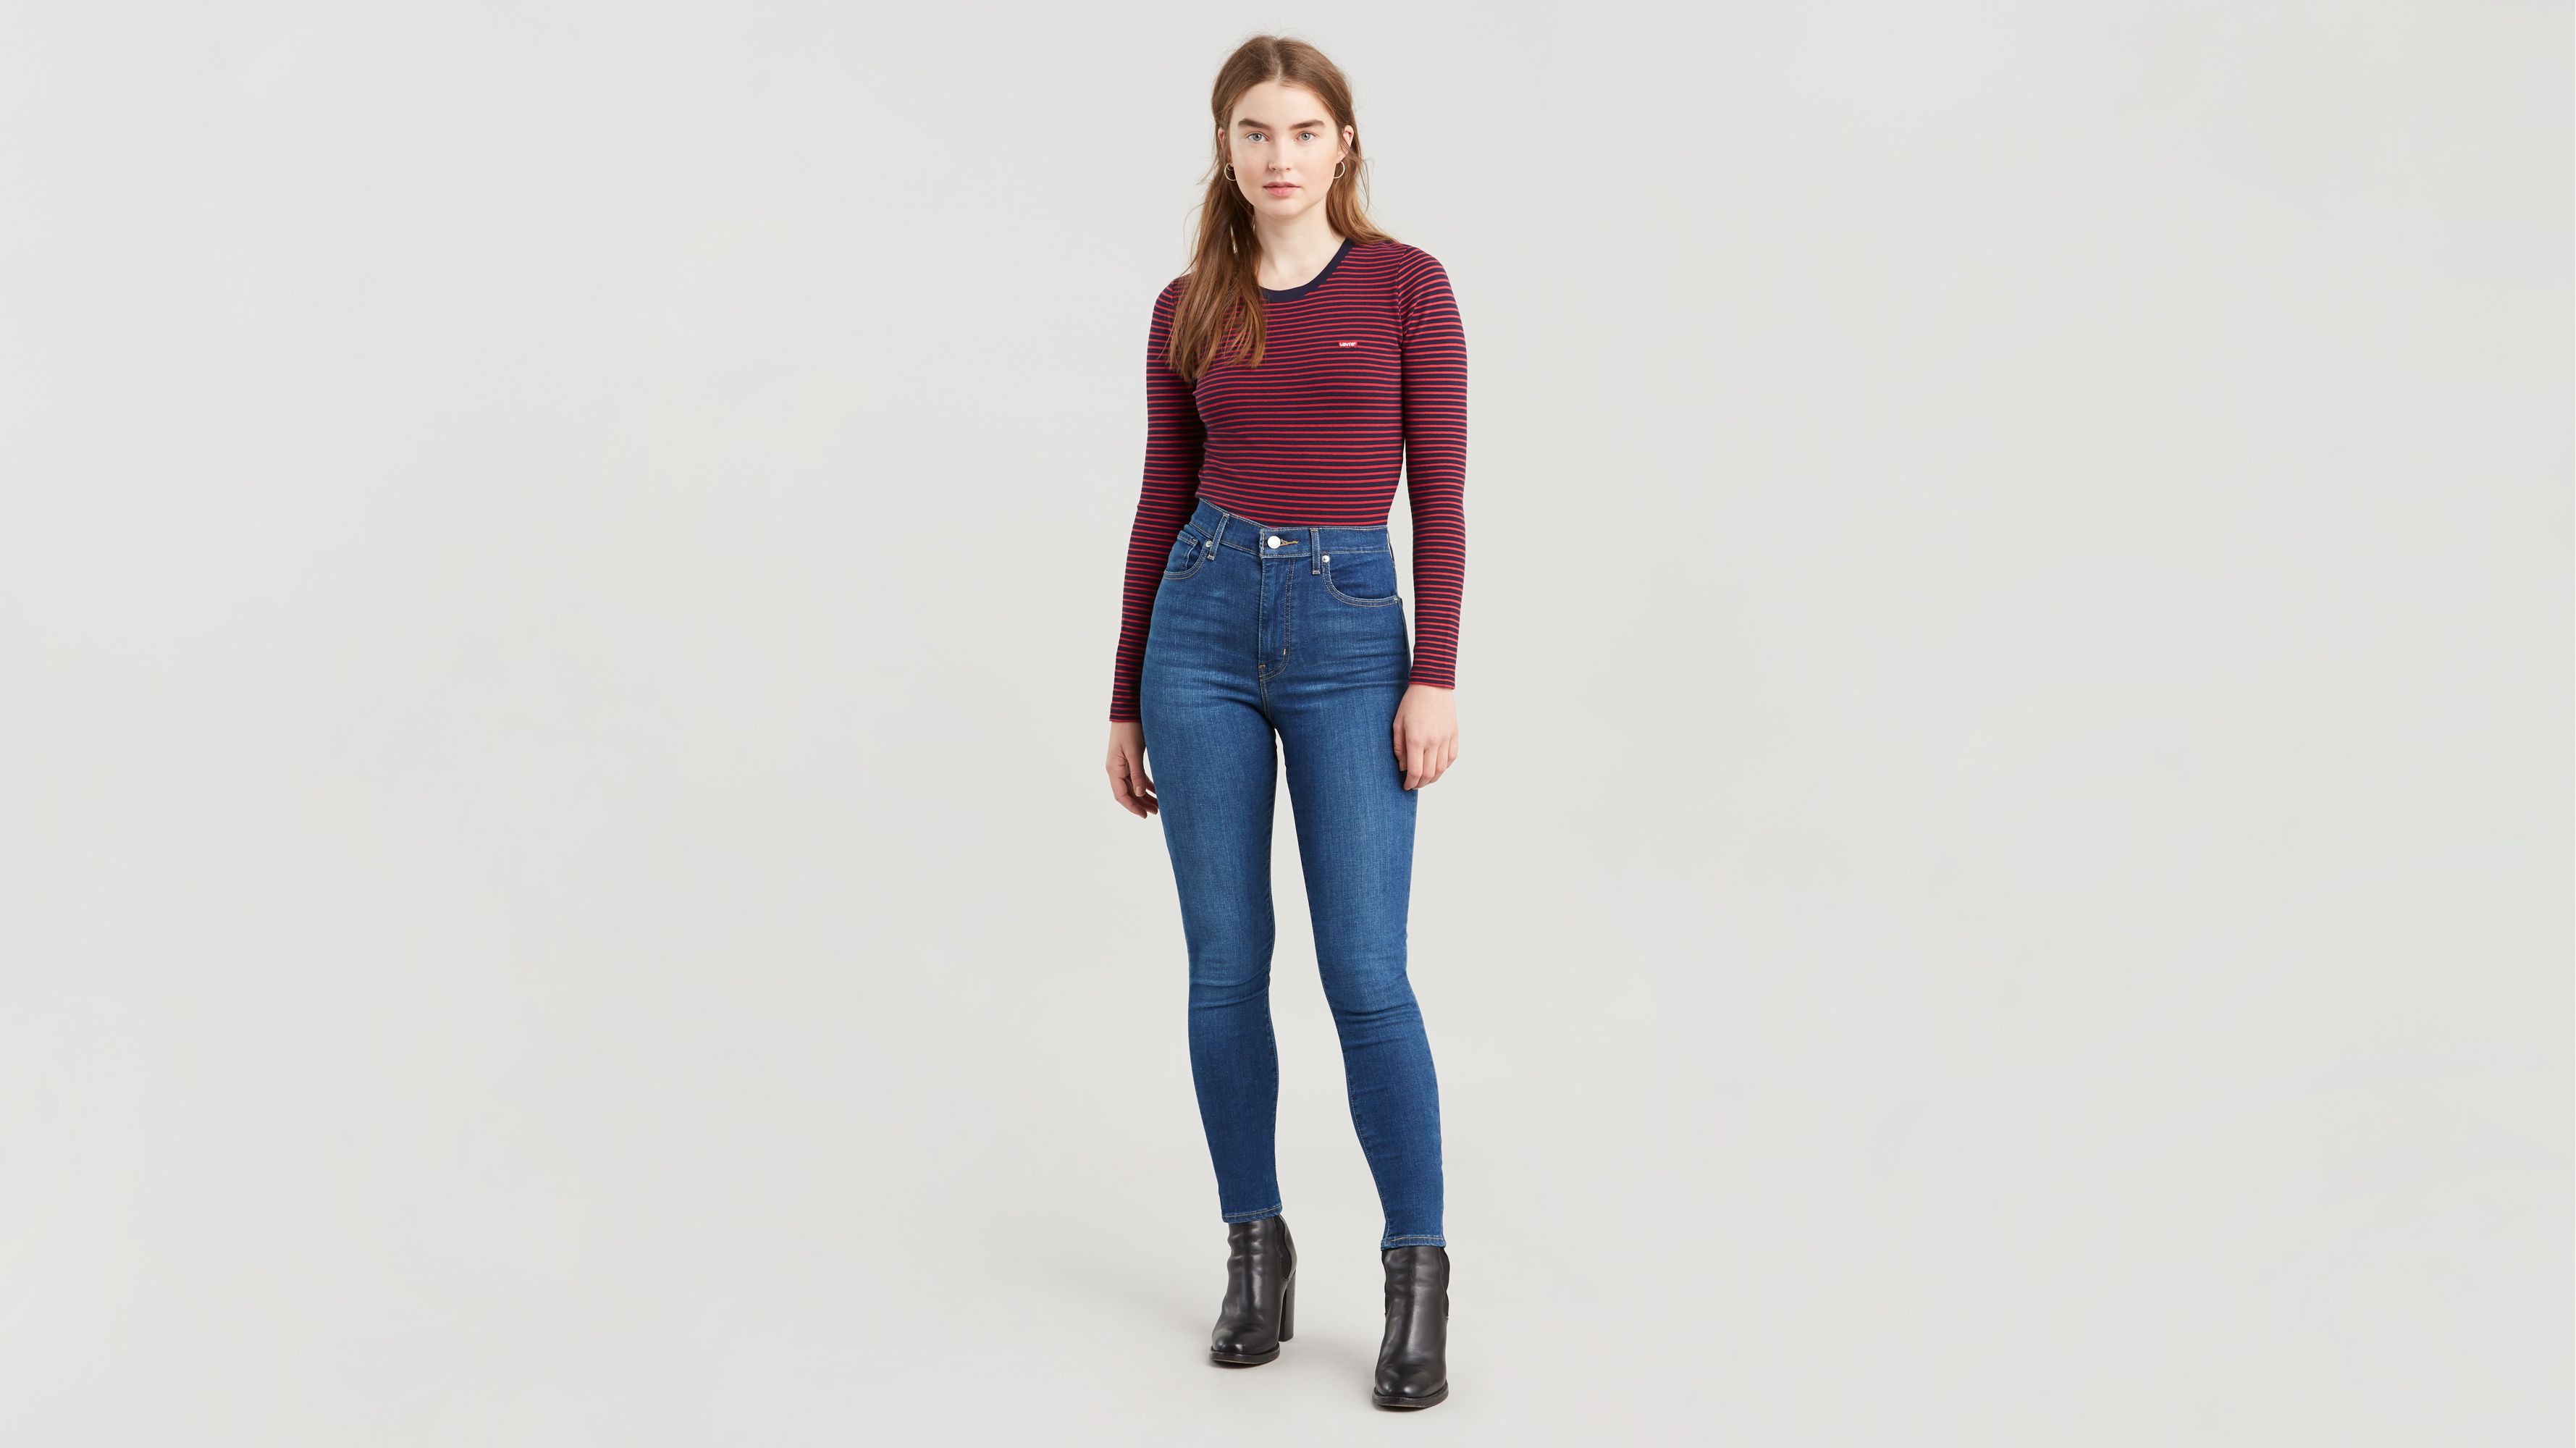 levi's mile high super skinny jeans castaway blue